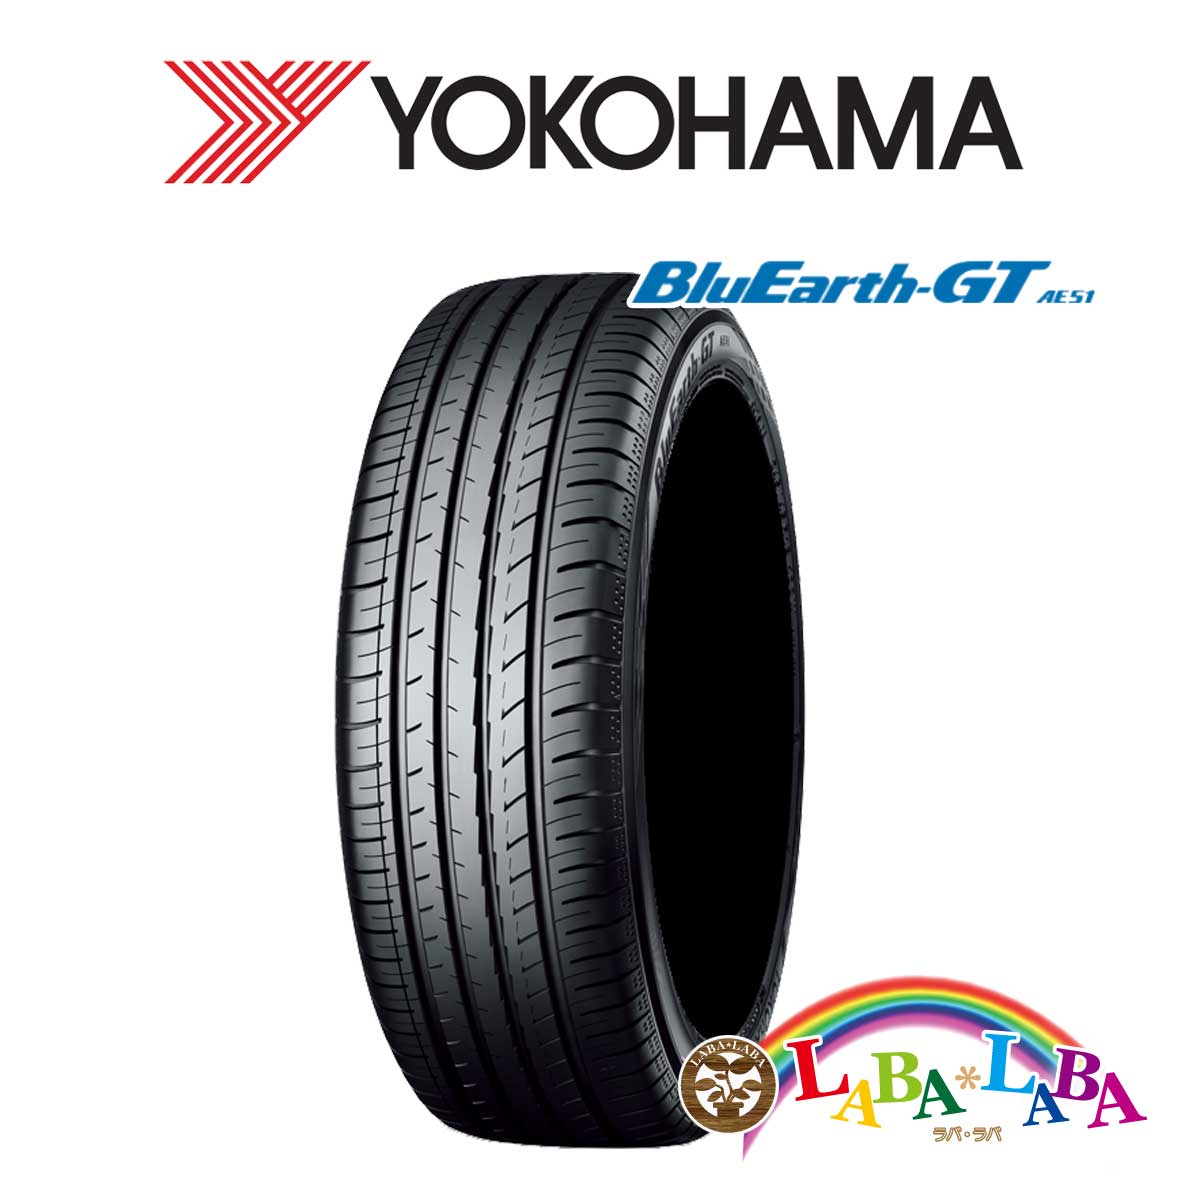 ２本以上送料無料 国産タイヤ サマータイヤ 新品 タイヤのみ 日本未発売 YOKOHAMA 【公式】 ヨコハマ 235 91W XL BluEarth-GT ブルーアース AE51 35R19